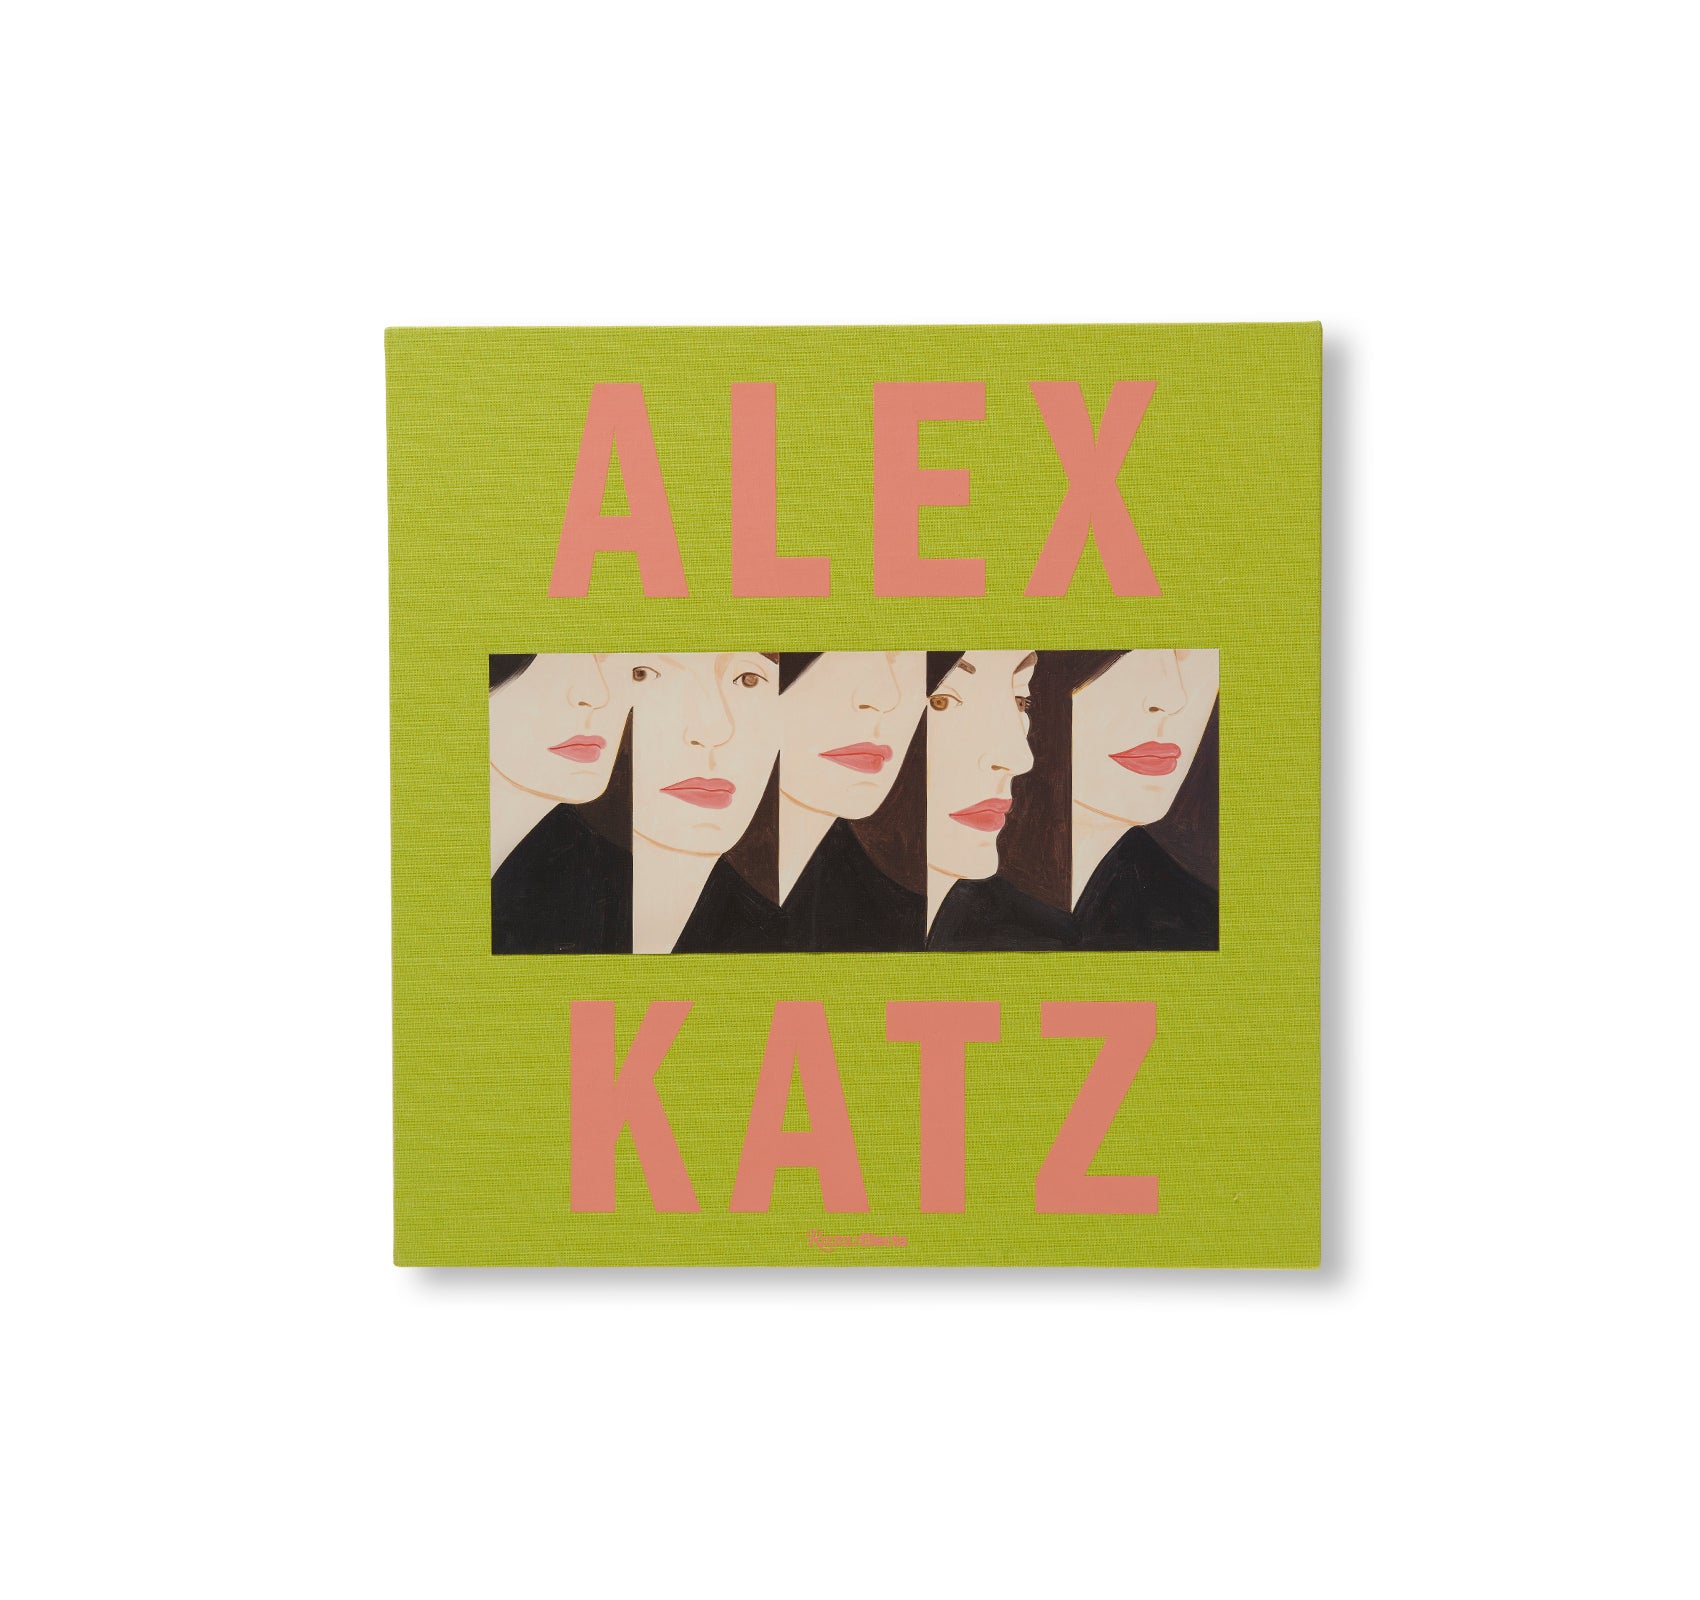 ALEX KATZ by Alex Katz – twelvebooks